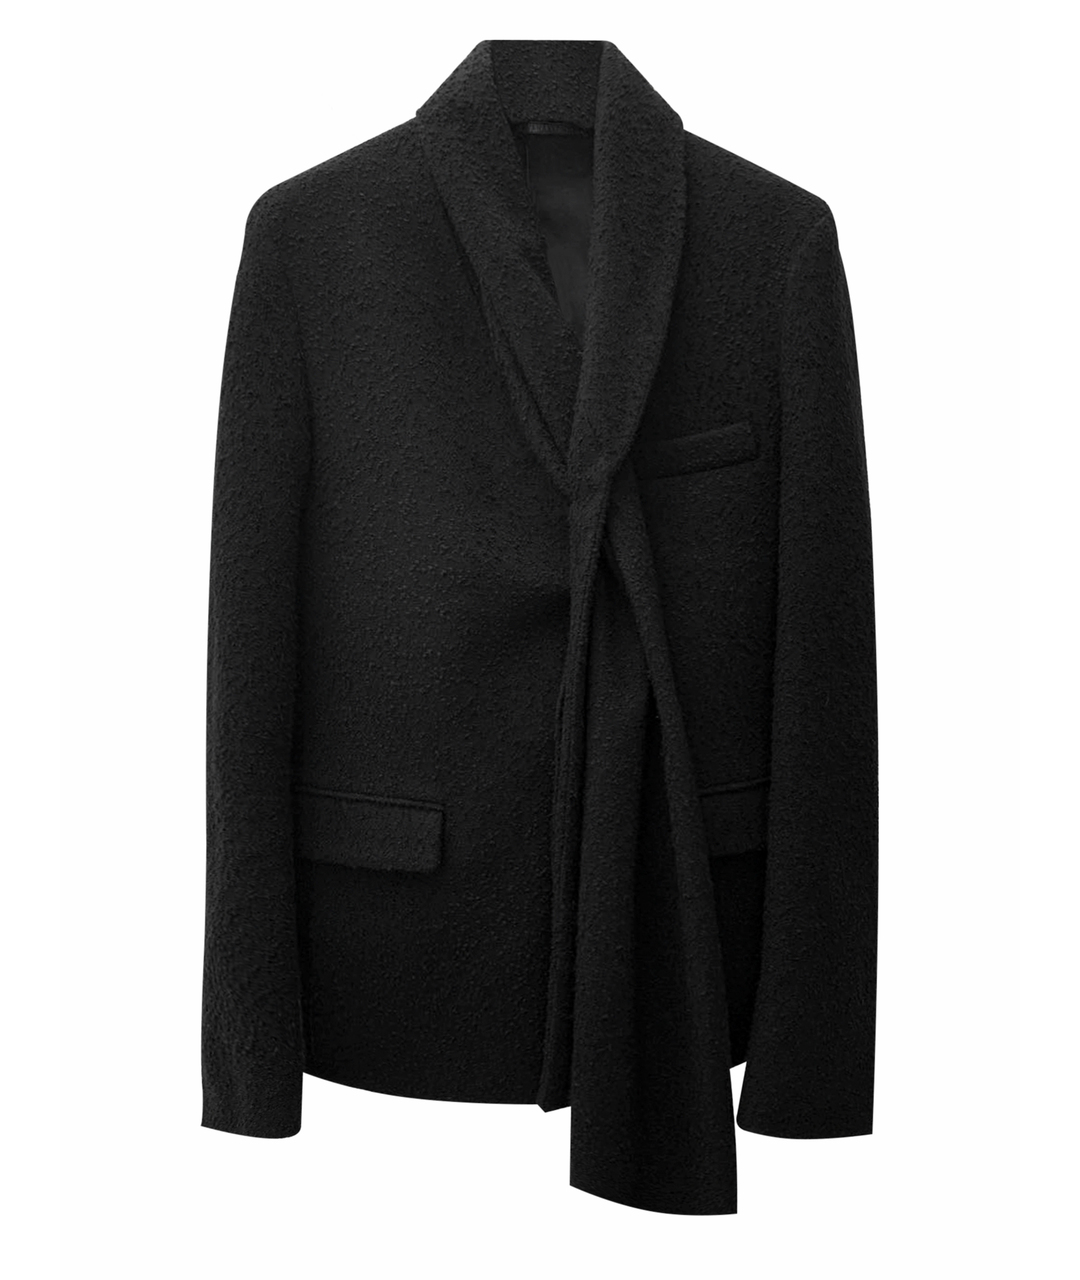 KRIS VAN ASSCHE Черный шерстяной пиджак, фото 1